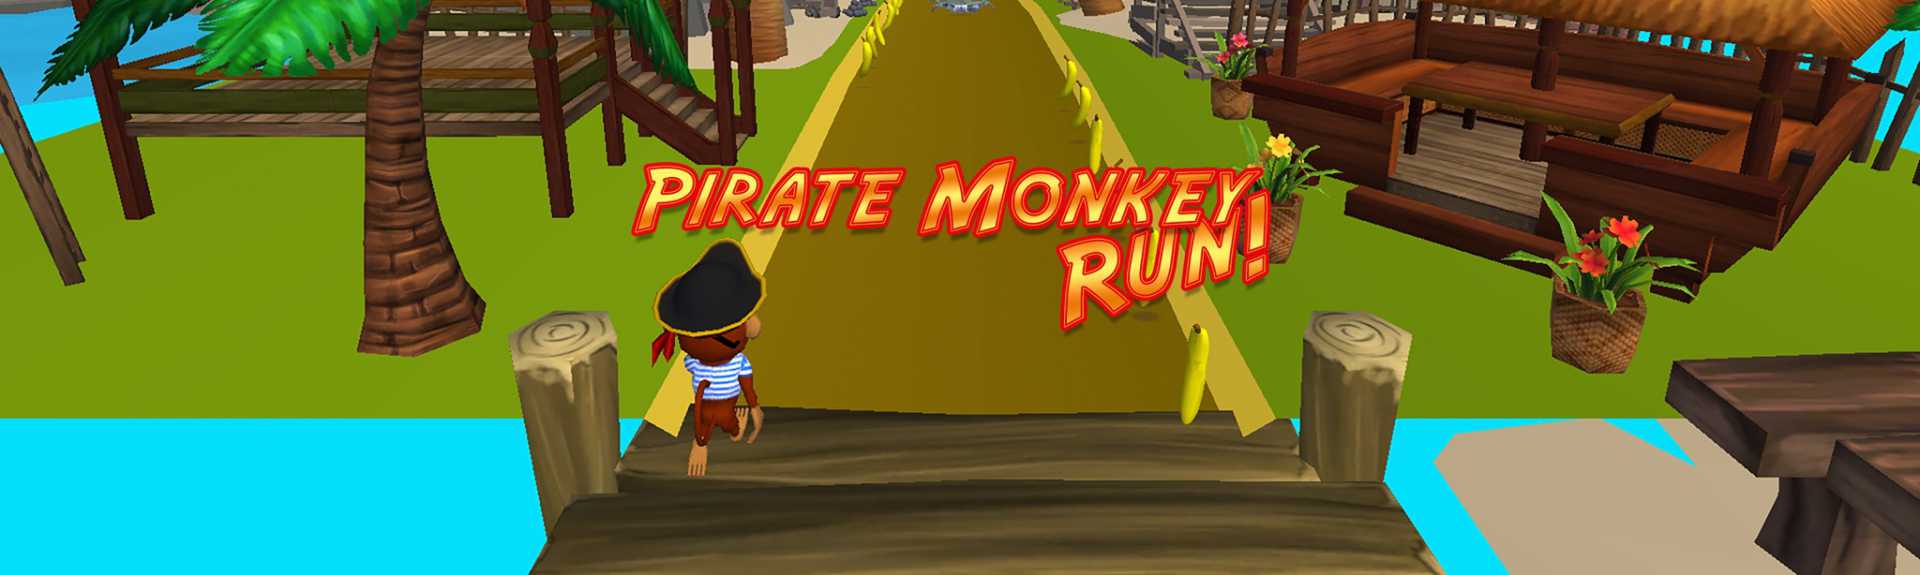 Pirate Monkey Run!